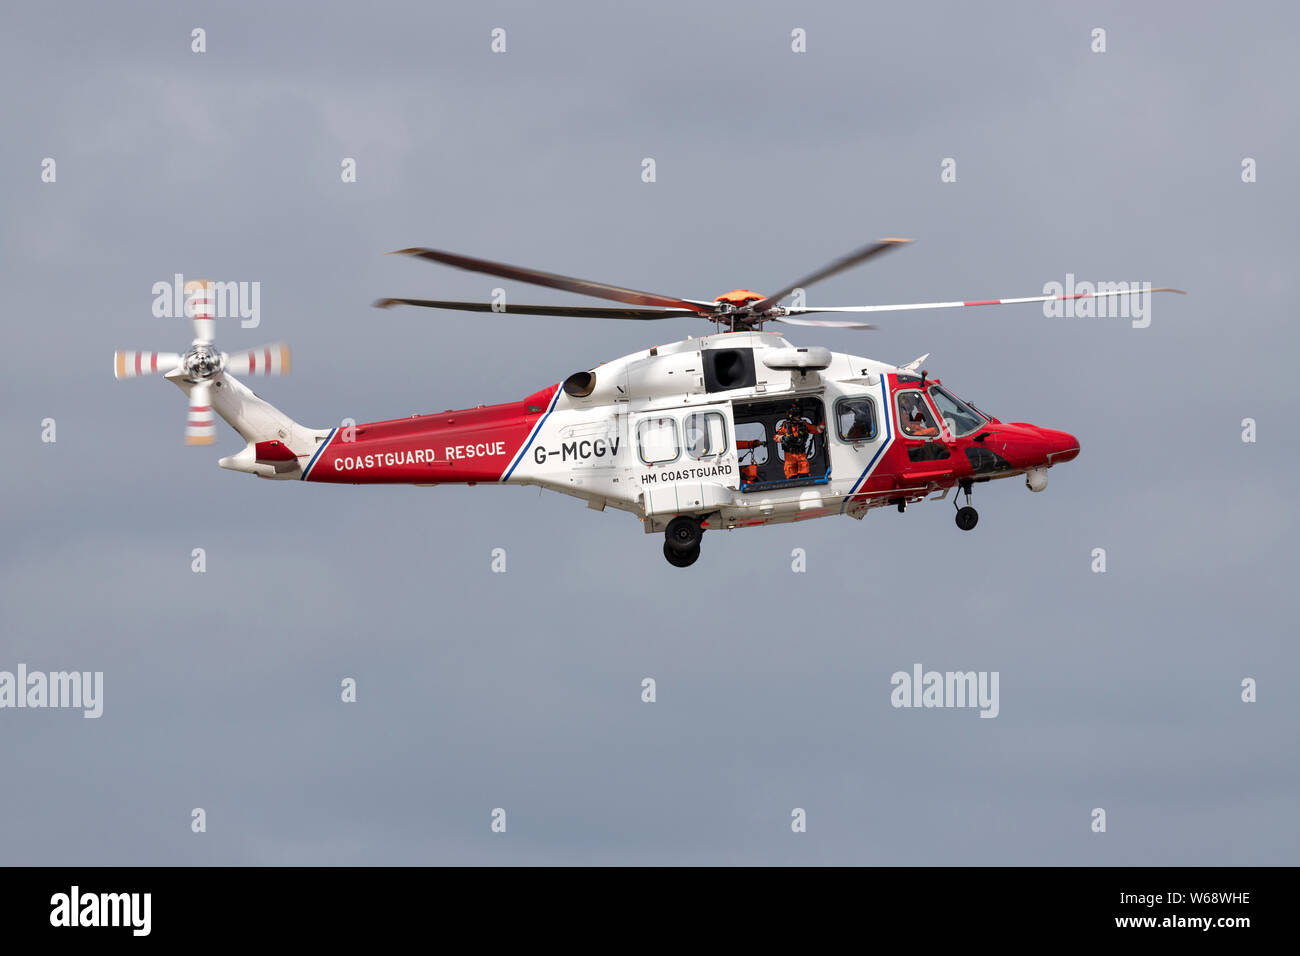 Bristow elicotteri AgustaWestland AW189 con registrazione G-MCGV in funzionamento per la Guardia Costiera britannica Foto Stock